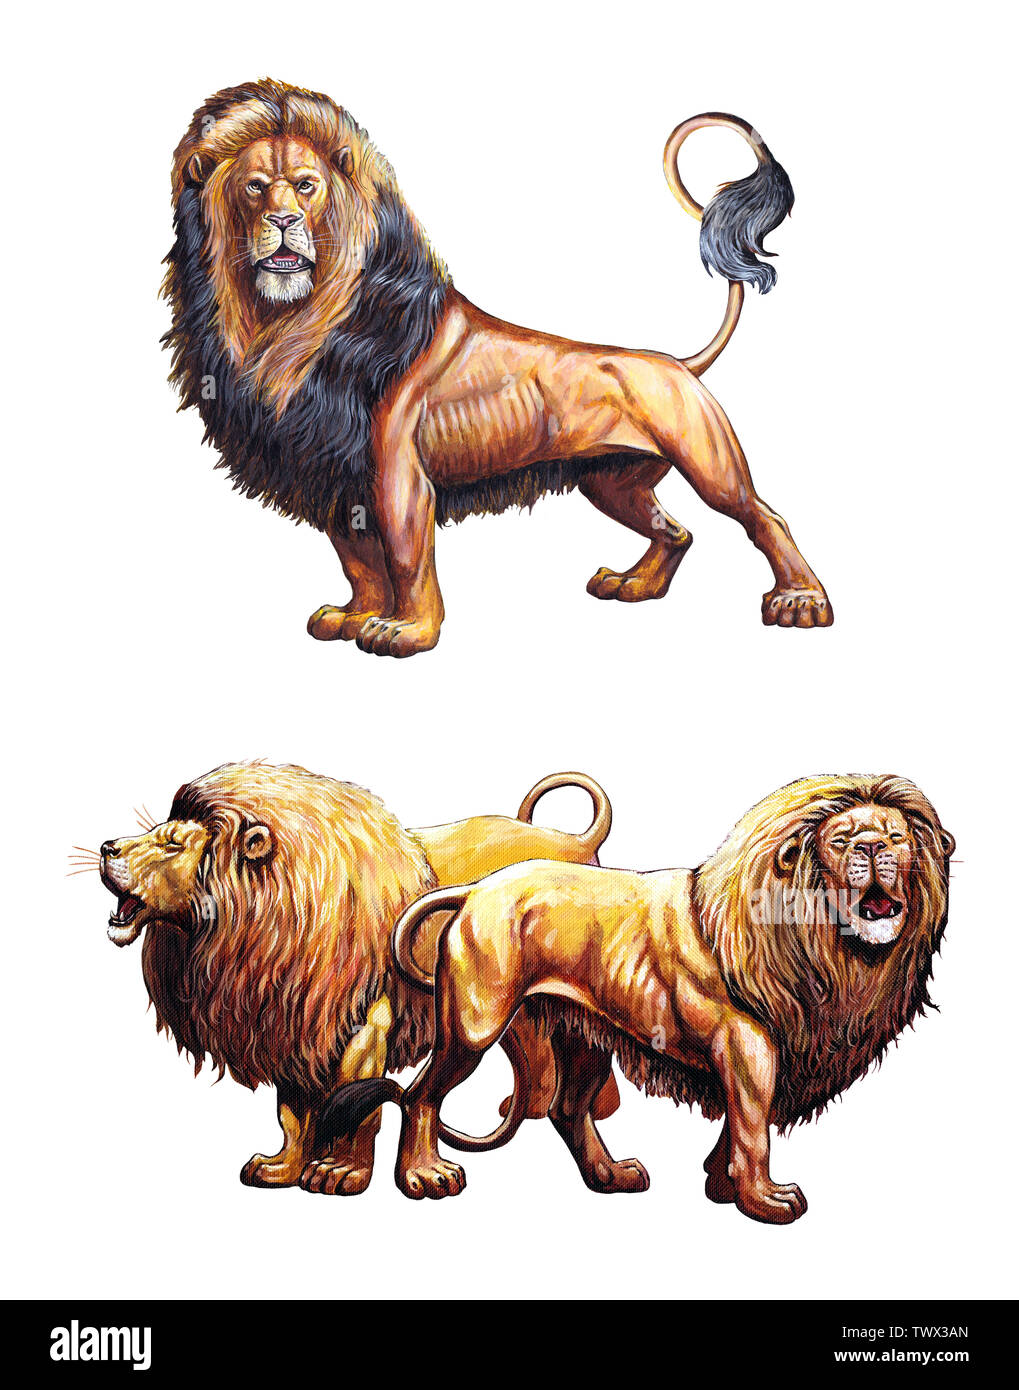 Lion rugissant. Lions 2 illustrations. Big cat illustration acrylique. Banque D'Images